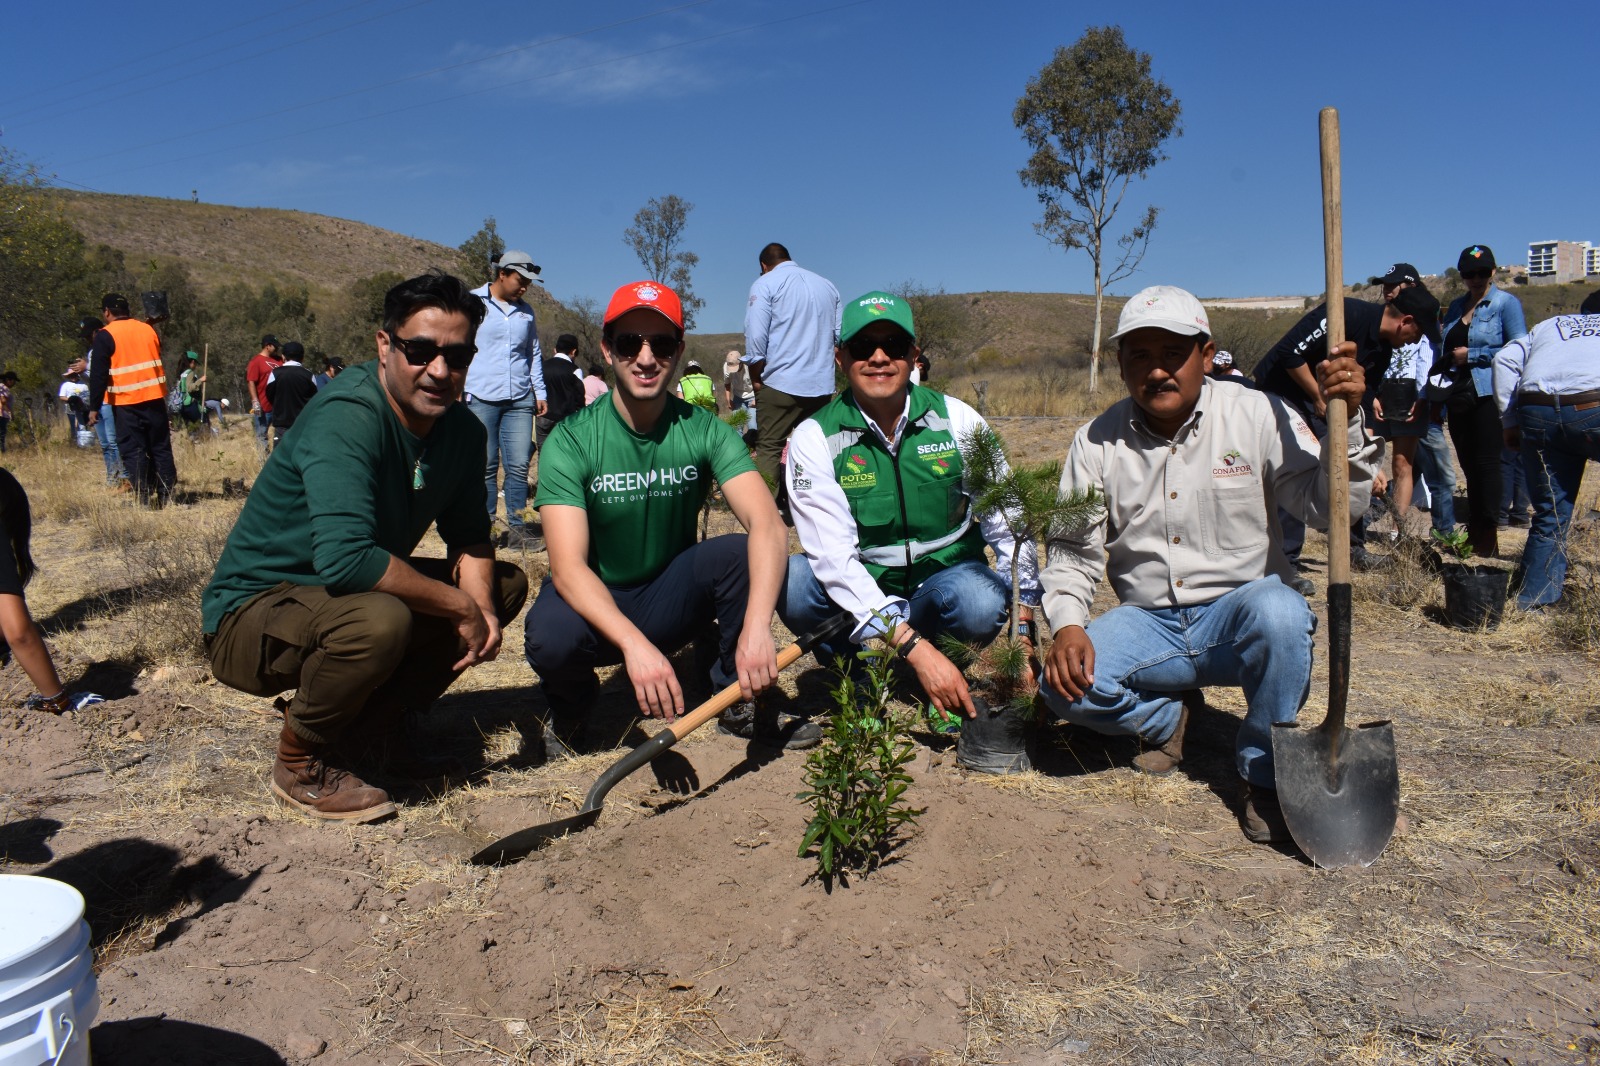 Más de 200 personas se sumaron a esta actividad, la dependencia refrendó el compromiso por un San Luis Potosí más verde y ecológico